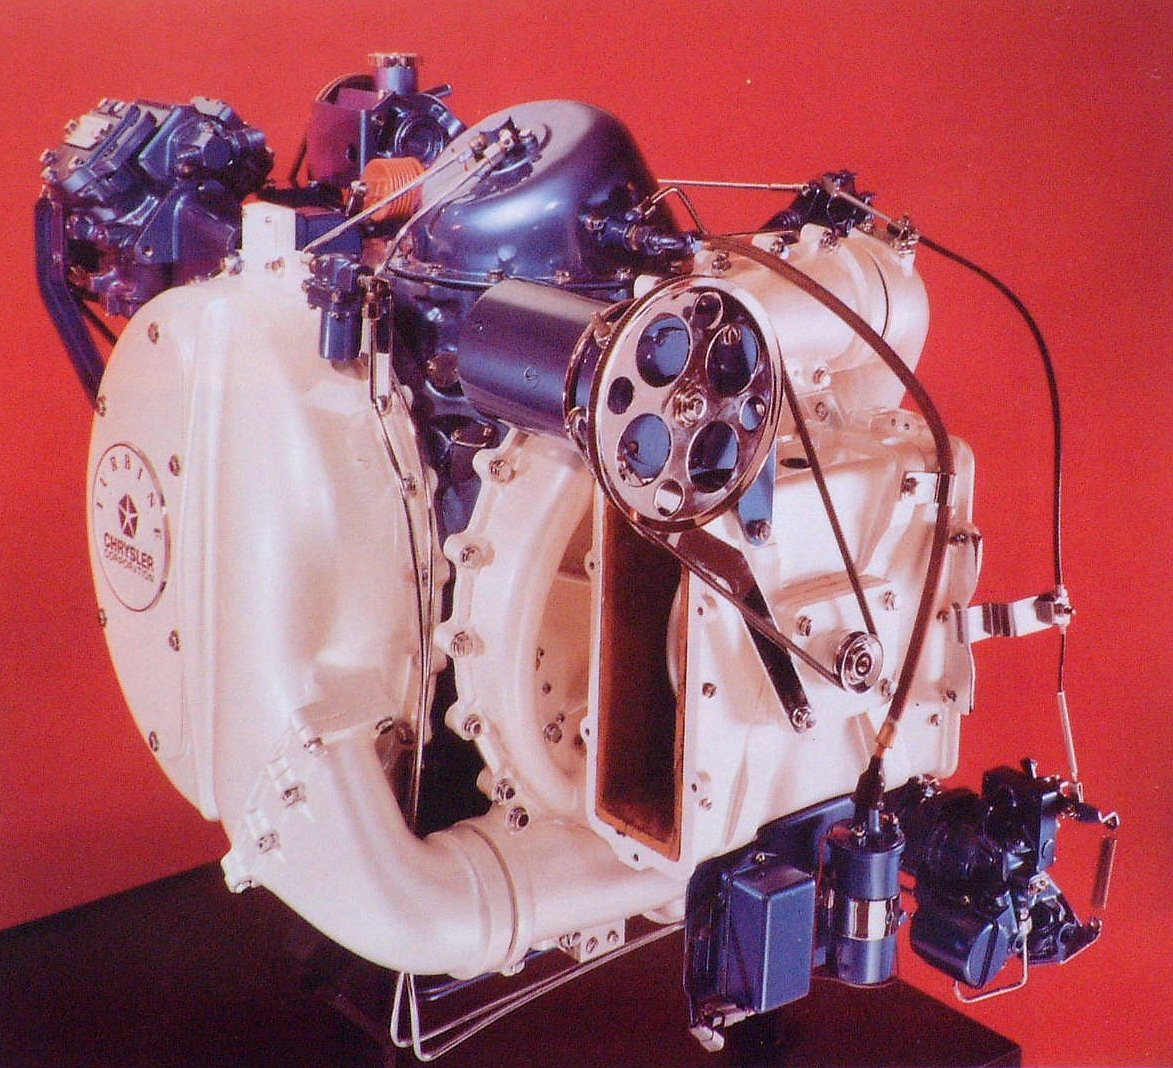 Slik så den ut, gassturbinmotoren som ble plassert under panseret på Chrysler turbinbil. 